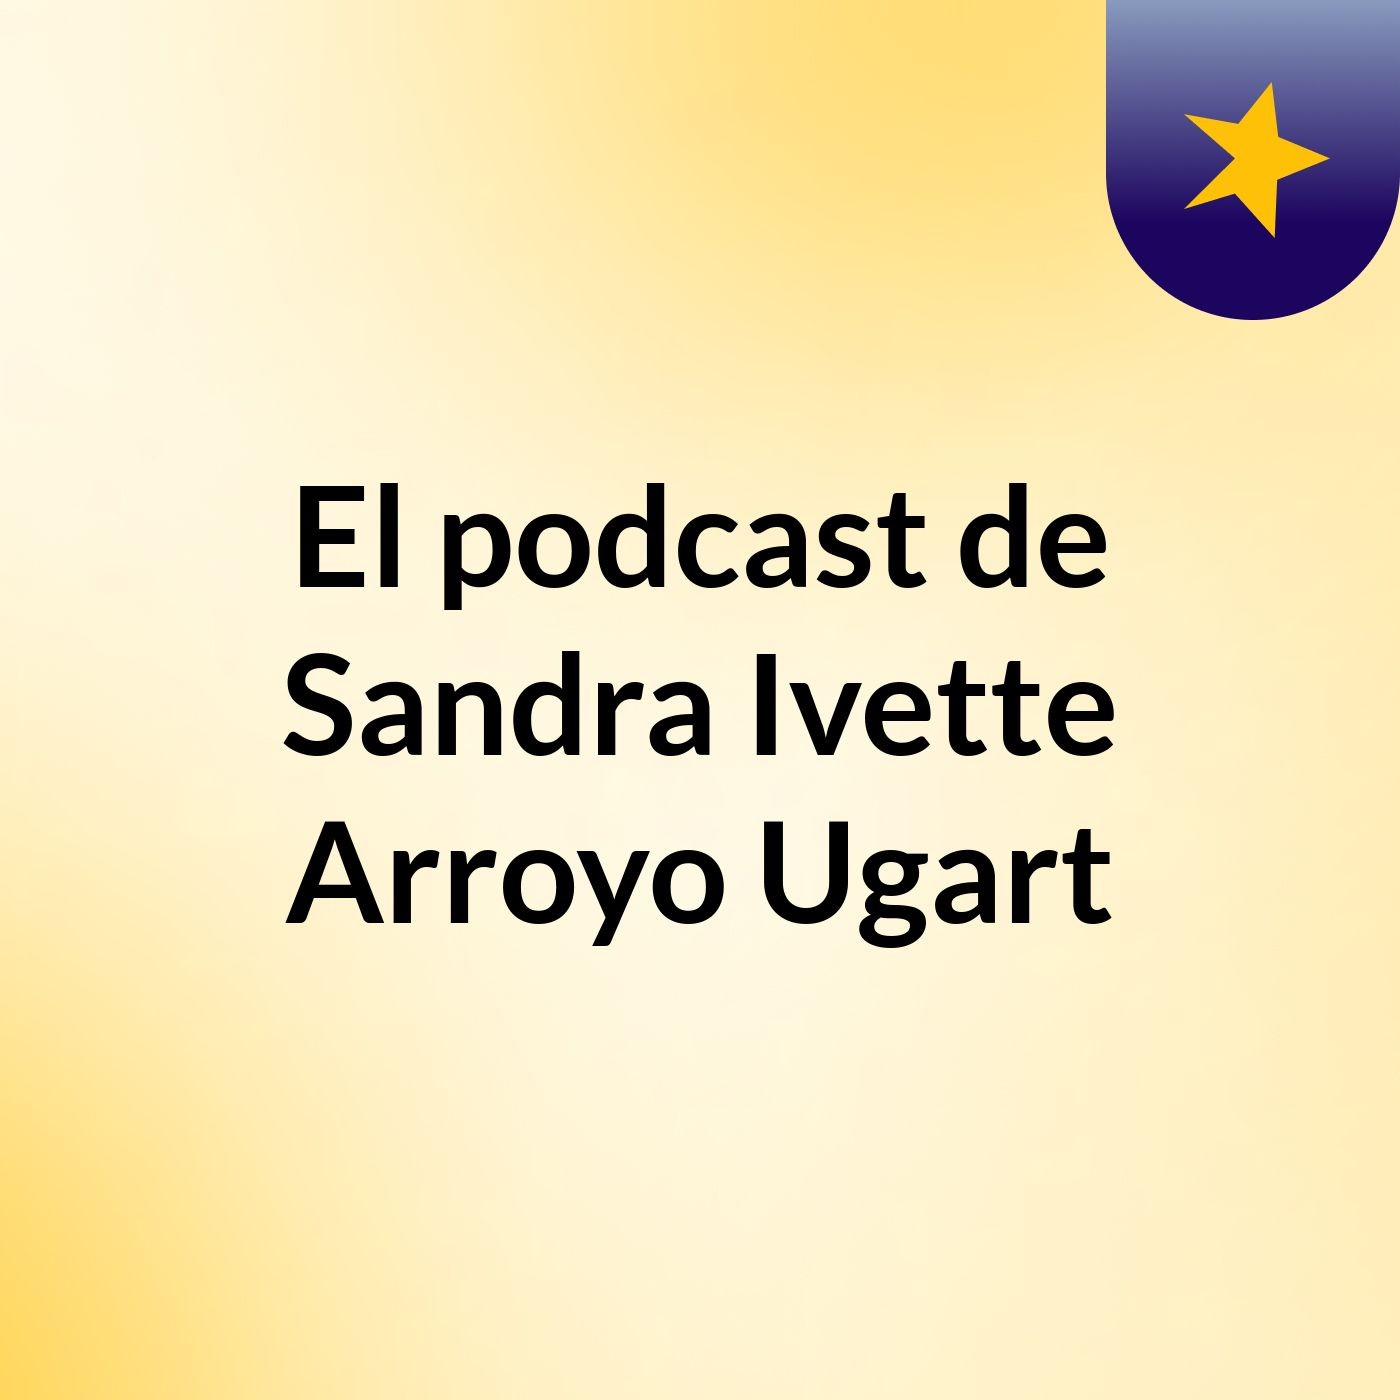 El podcast de Sandra Ivette Arroyo Ugart